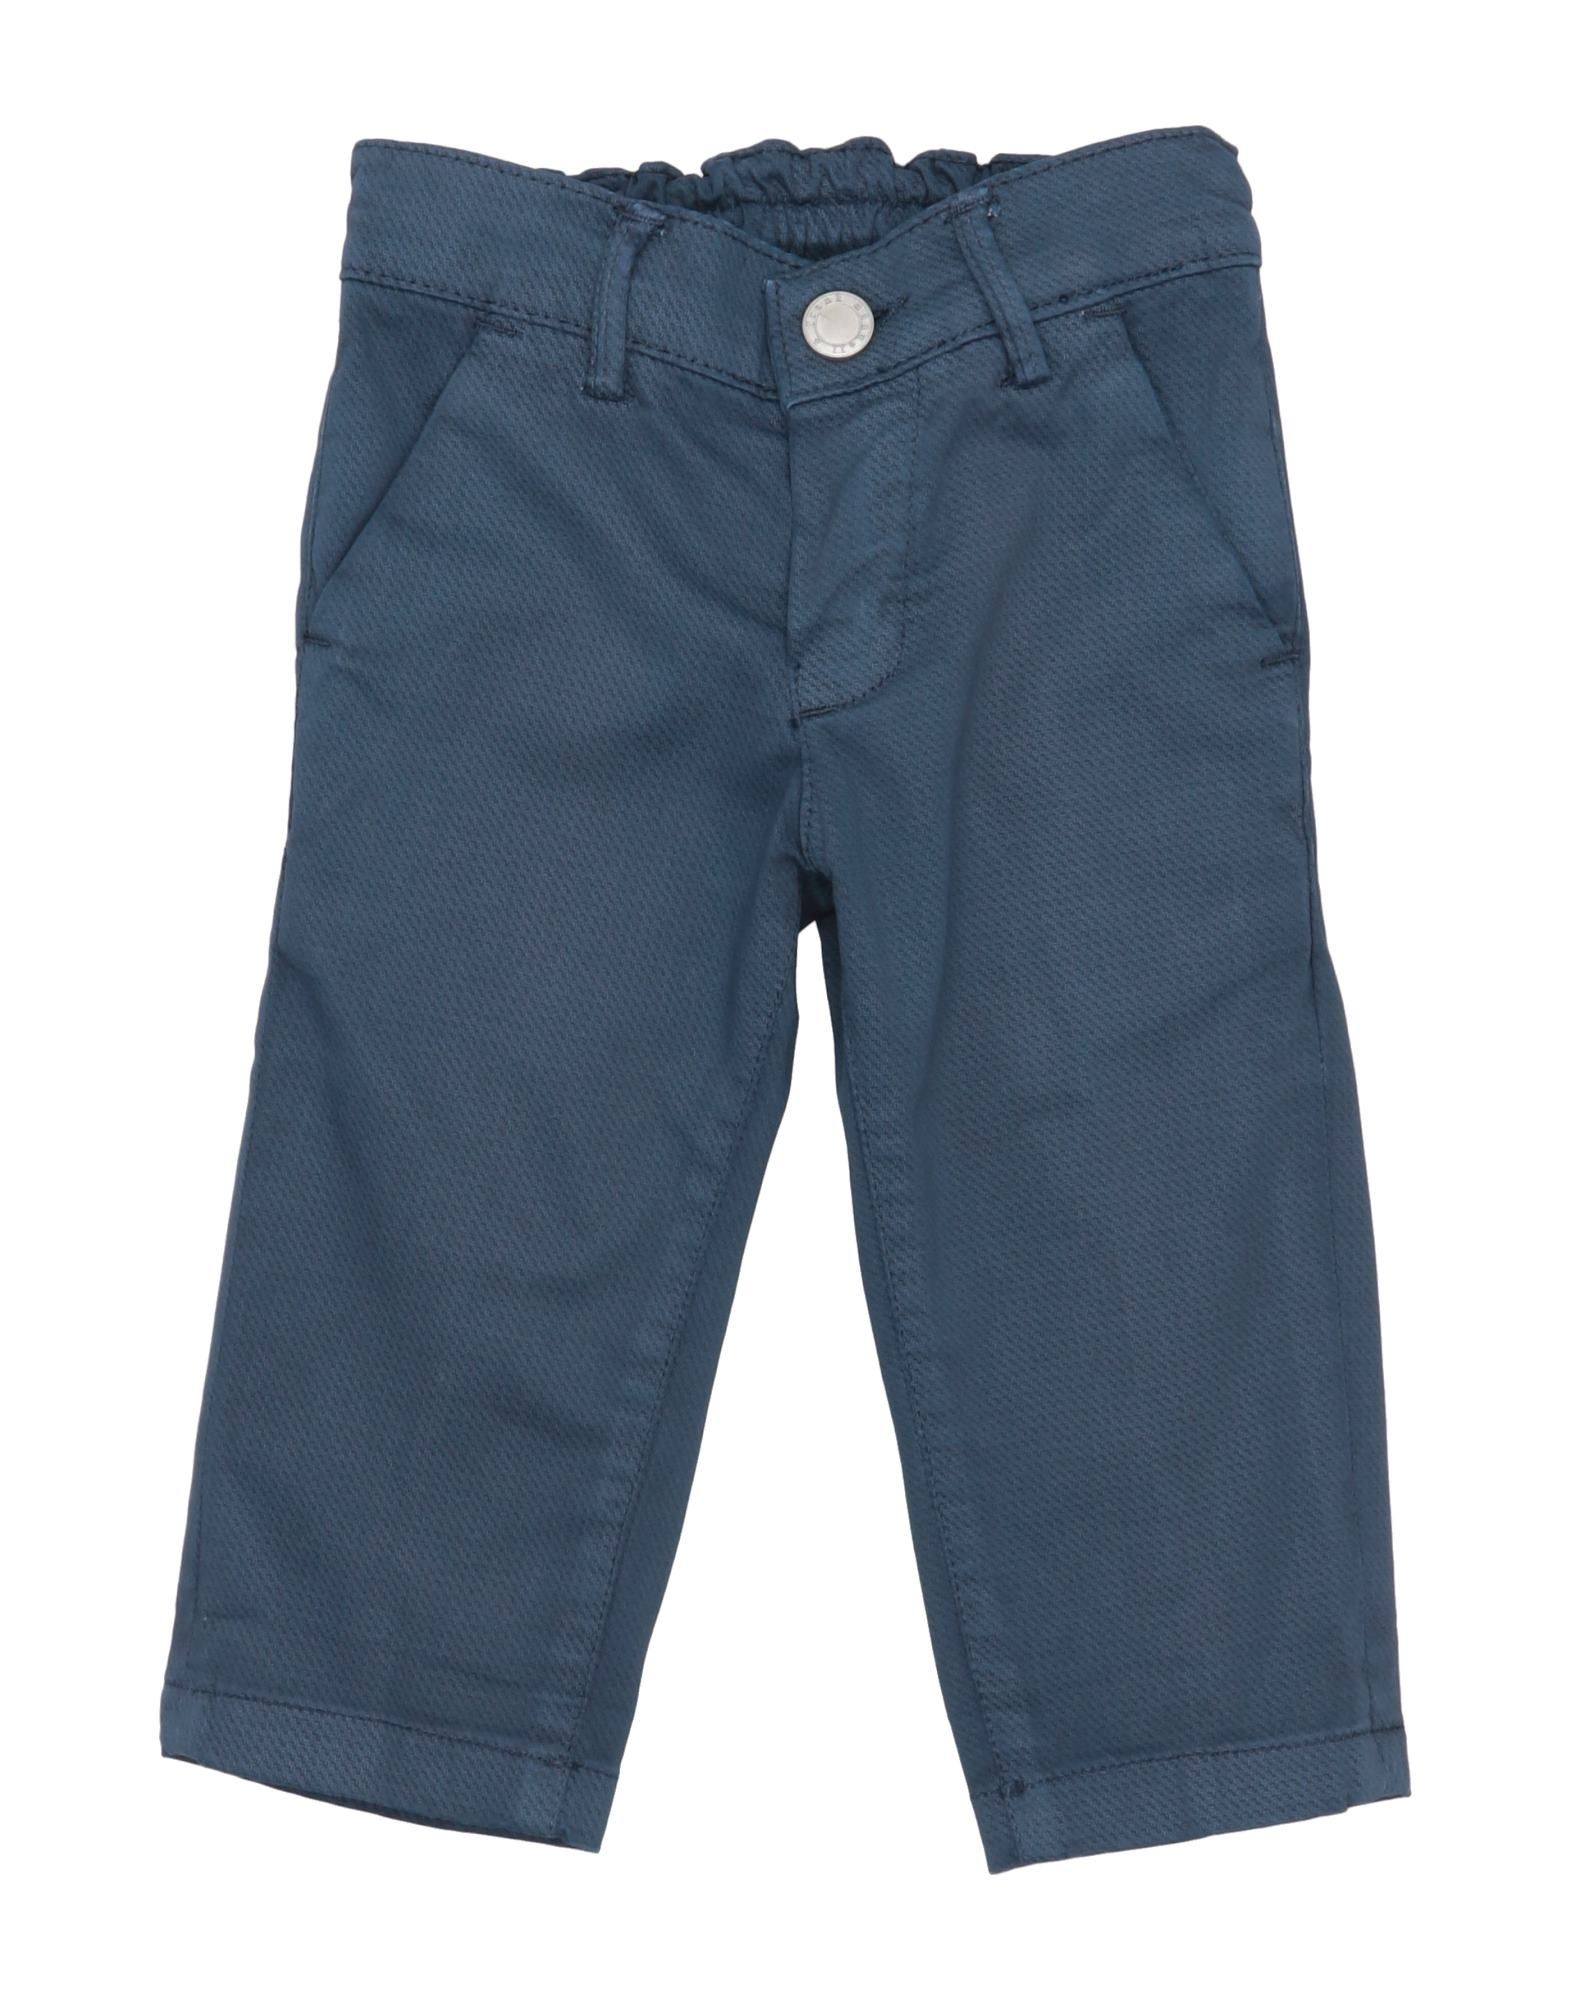 Manuell & Frank Kids' Pants In Slate Blue